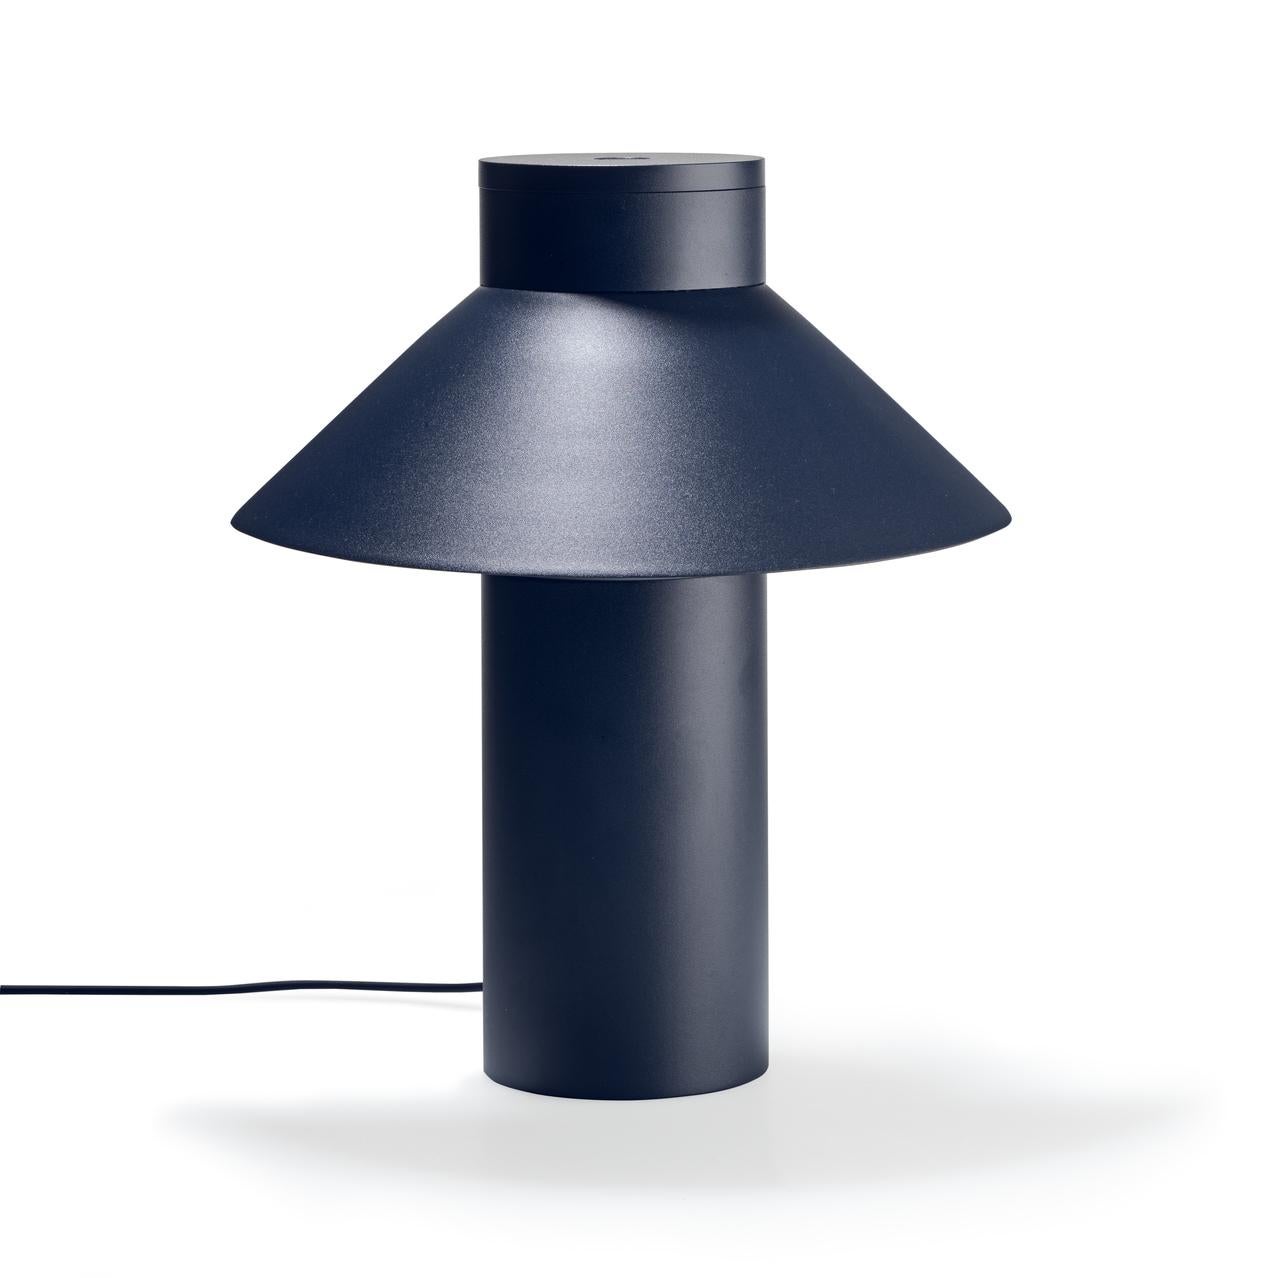 Lampe de table conçue par Joe Colombo en 1968. 

Avec sa forme épurée mais optimiste, un abat-jour léger et triangulaire qui semble flotter sur une base cylindrique lourde, la lampe de table de l'icône du design italien Joe Colombo fait un clin